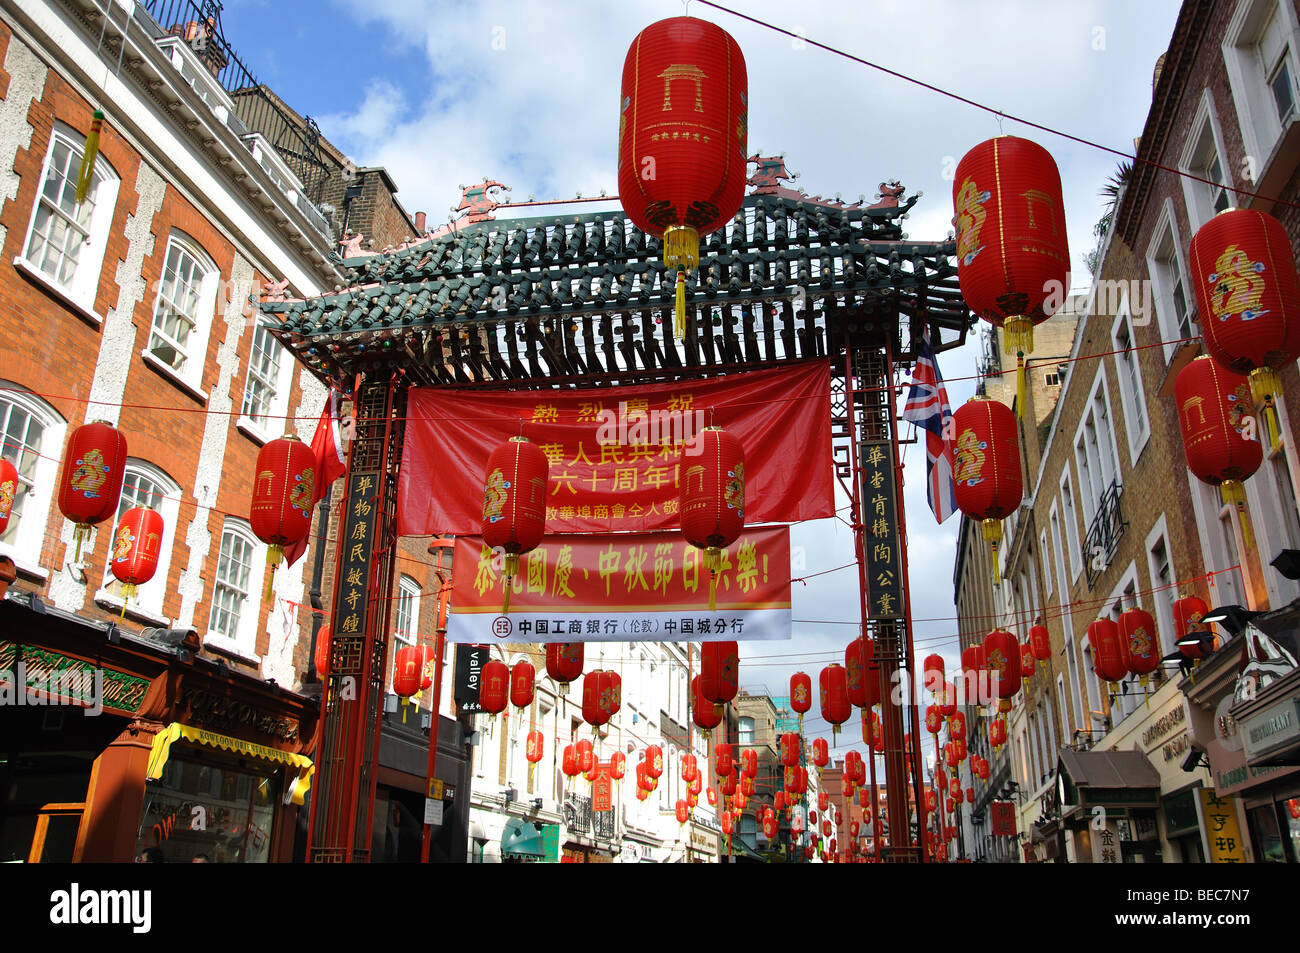 Porte d'entrée de Paifang, Gerrard Street, Chinatown, Cité de Westminster, Londres, Angleterre, Royaume-Uni Banque D'Images